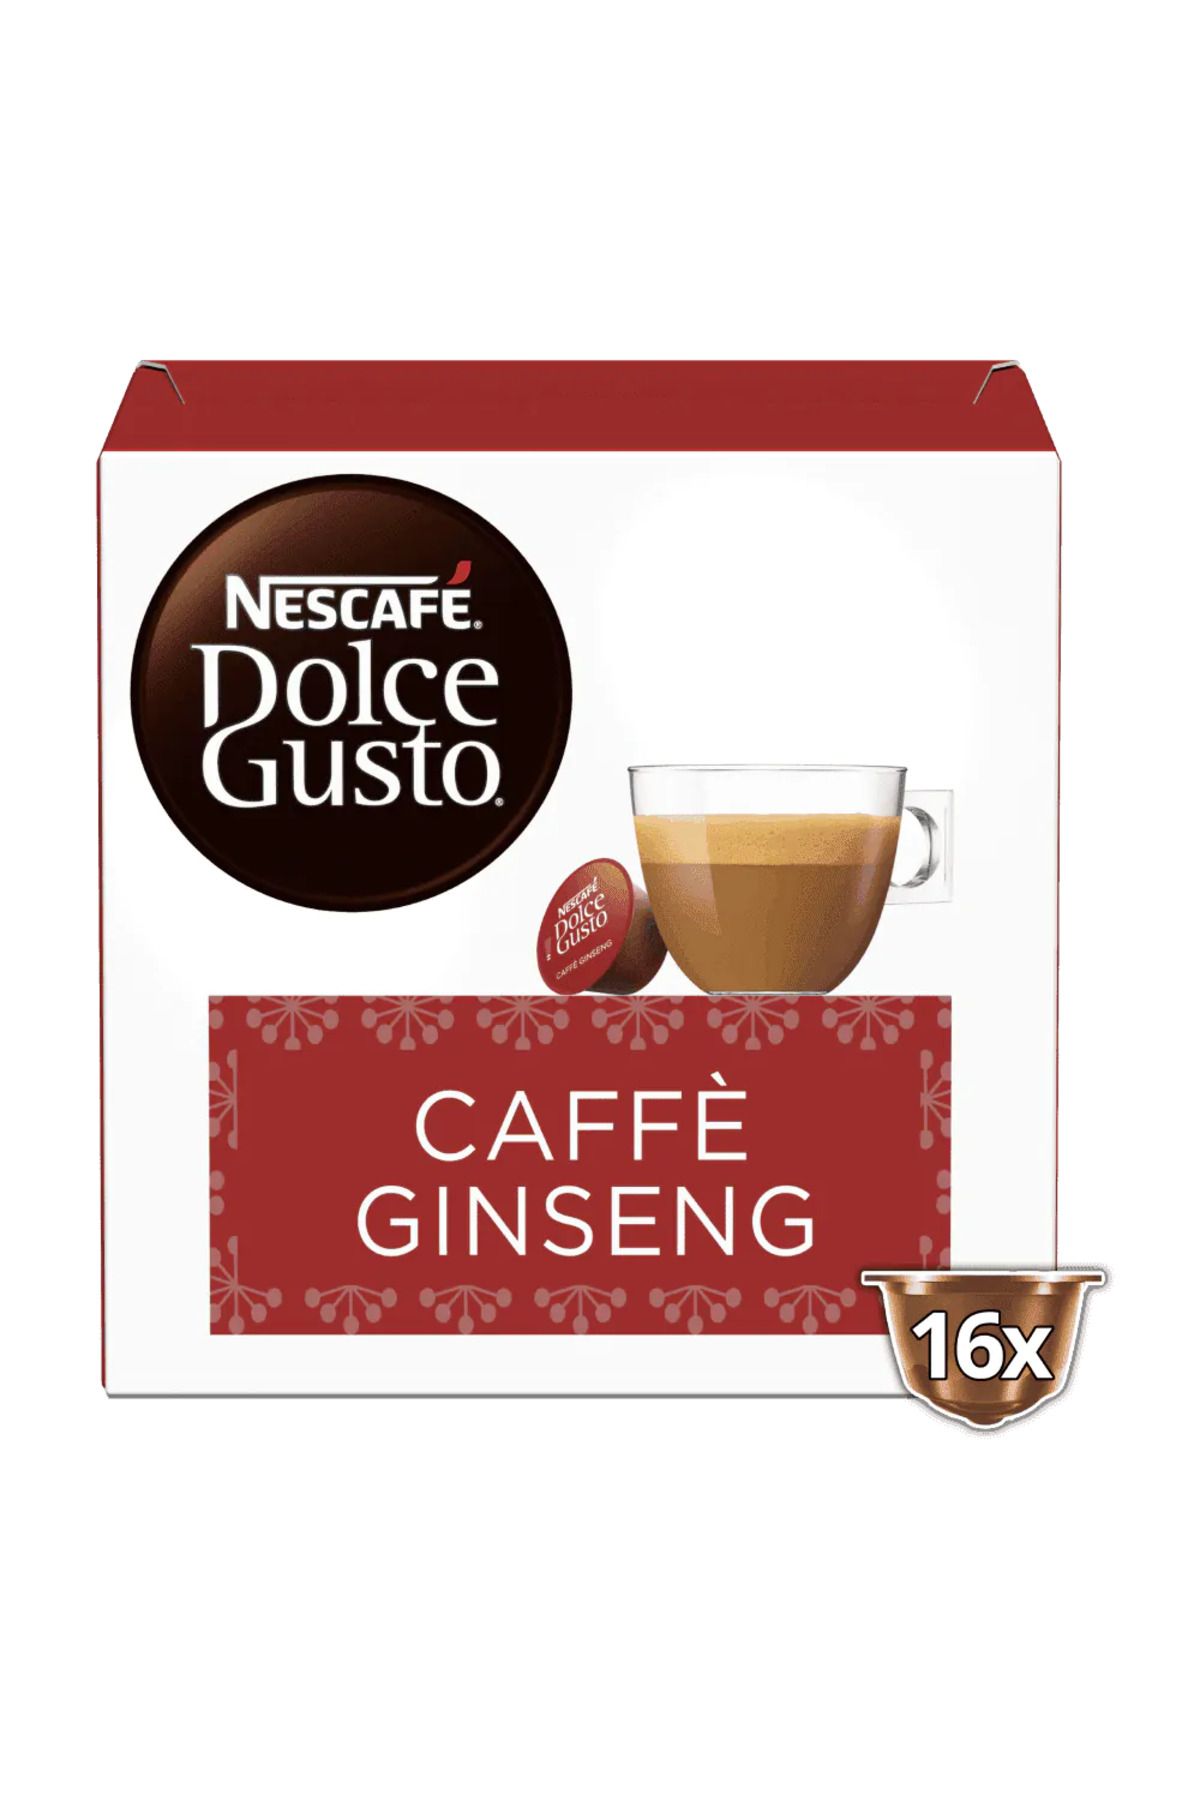 Nescafe Dolce gusto Caffè Ginseng kapsül kahve